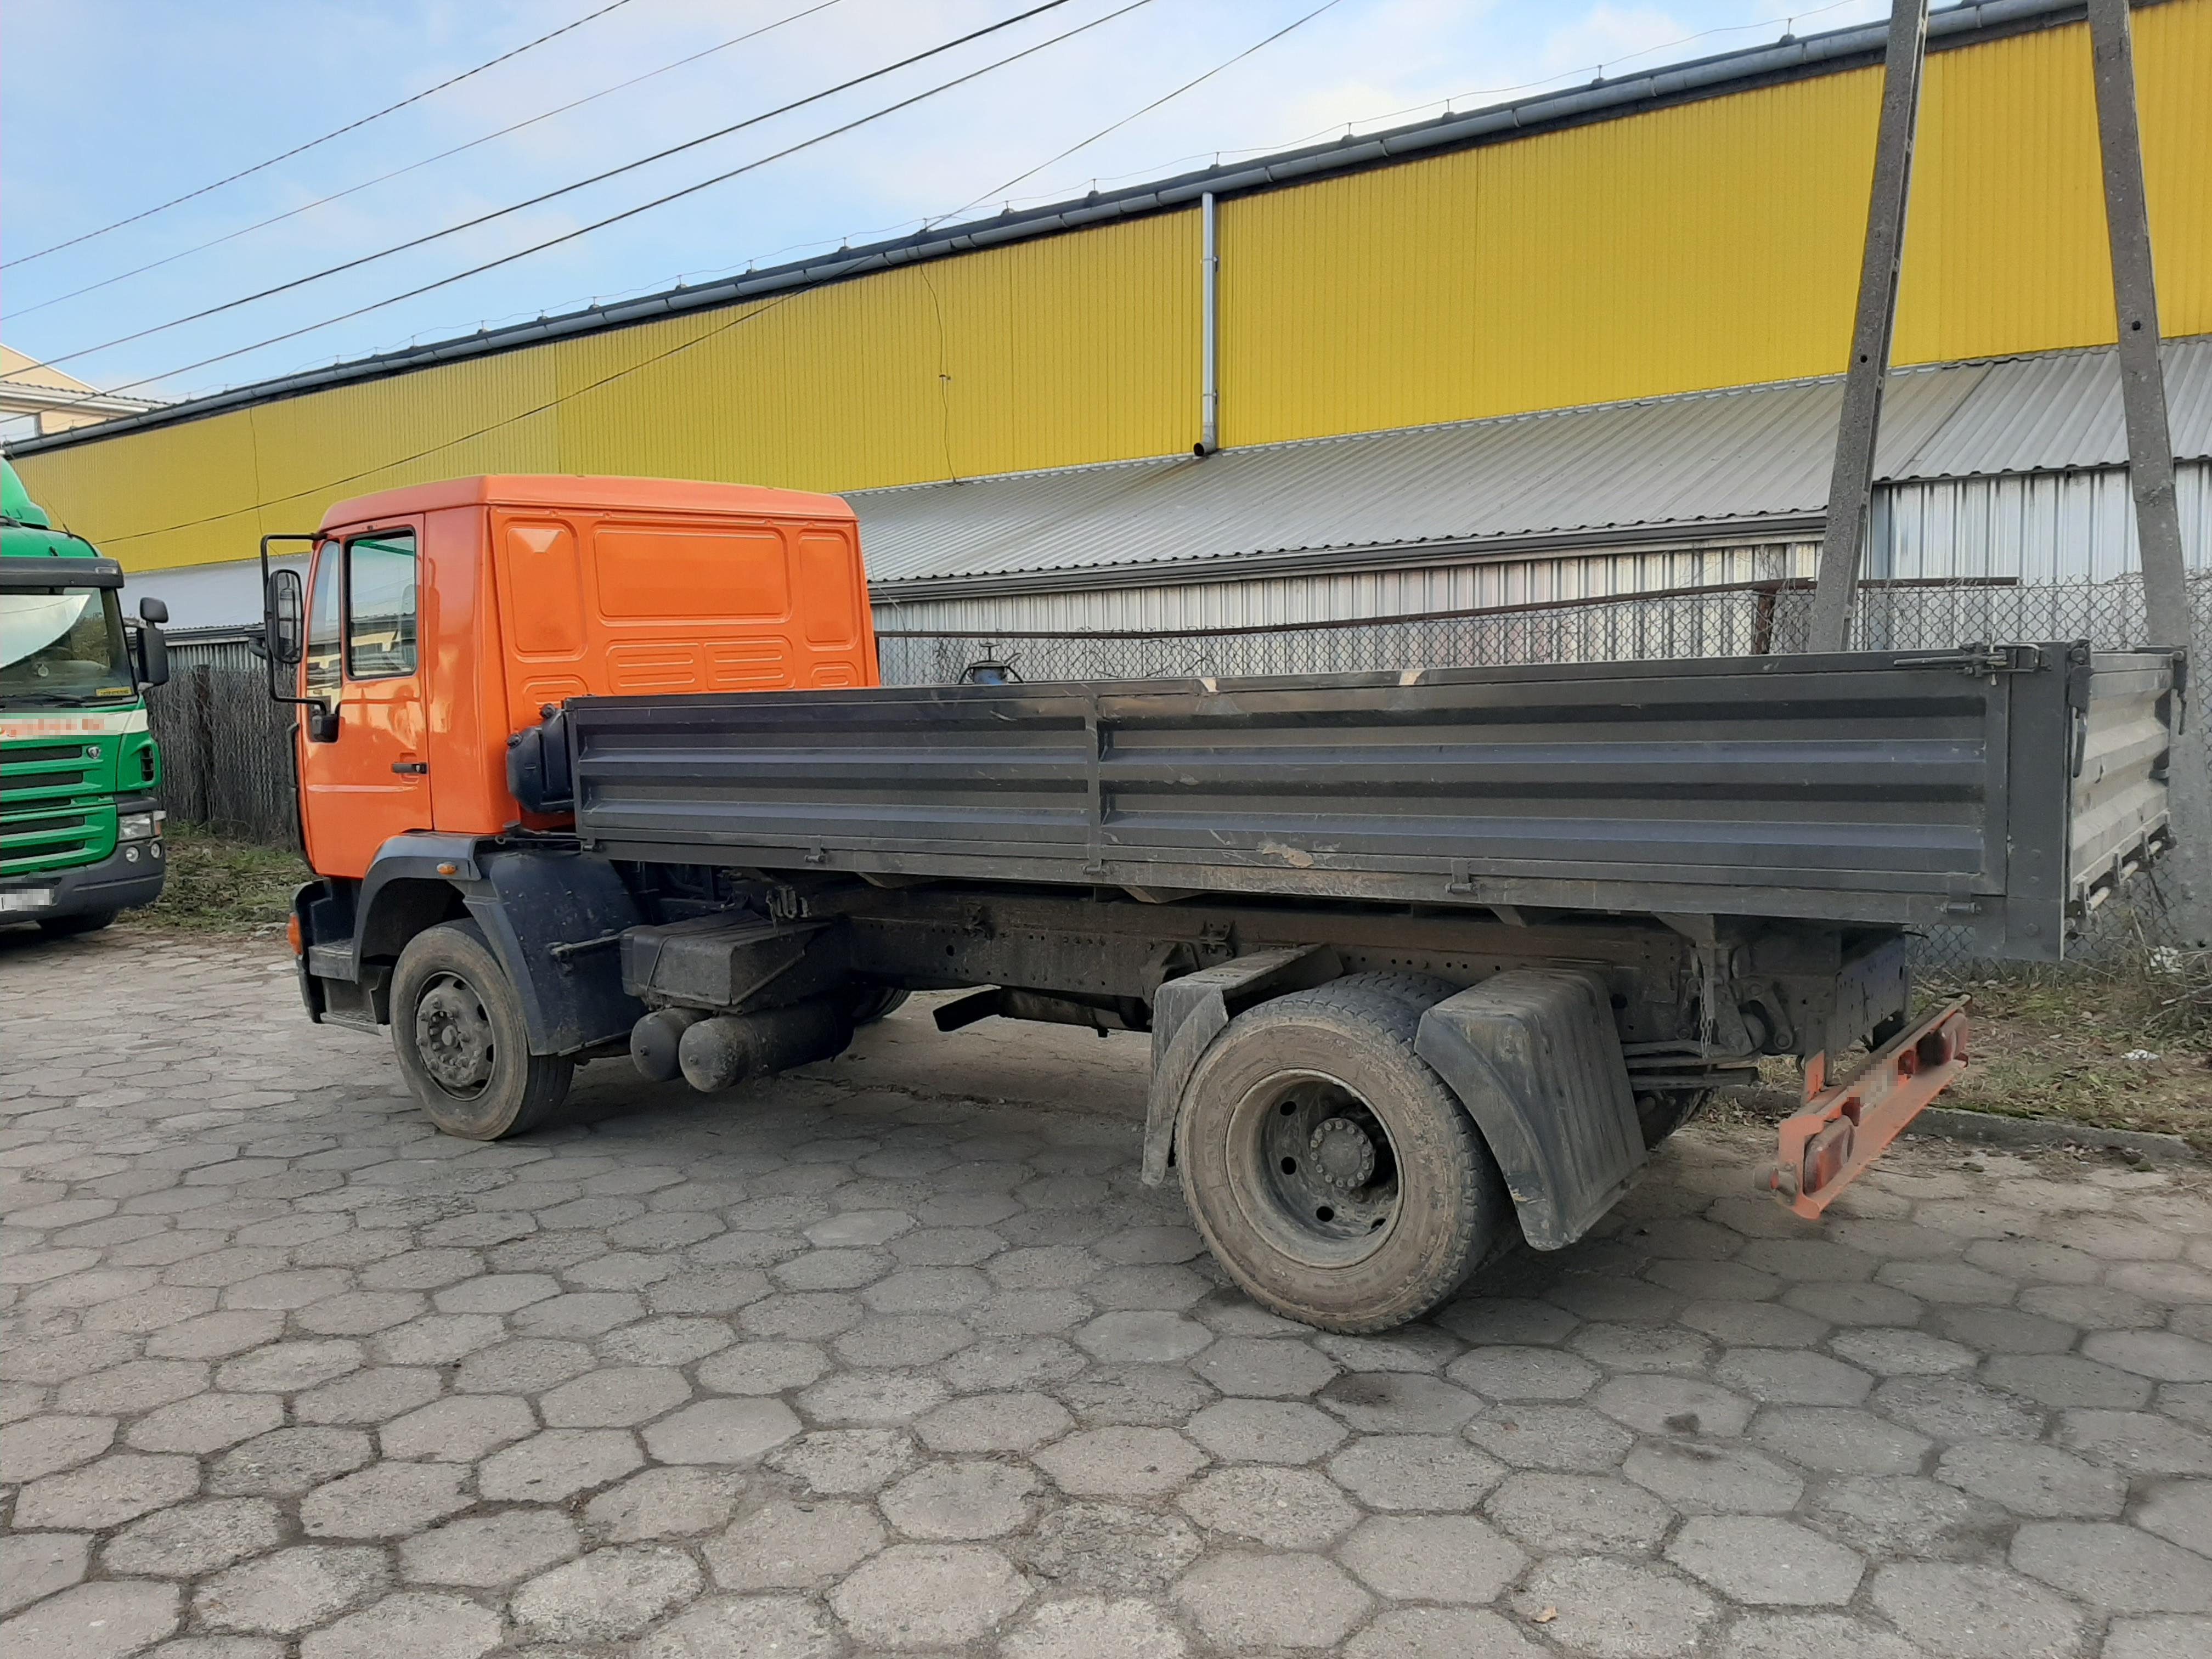 Zatrzymana ciężarówka z pomarańczową kabiną 